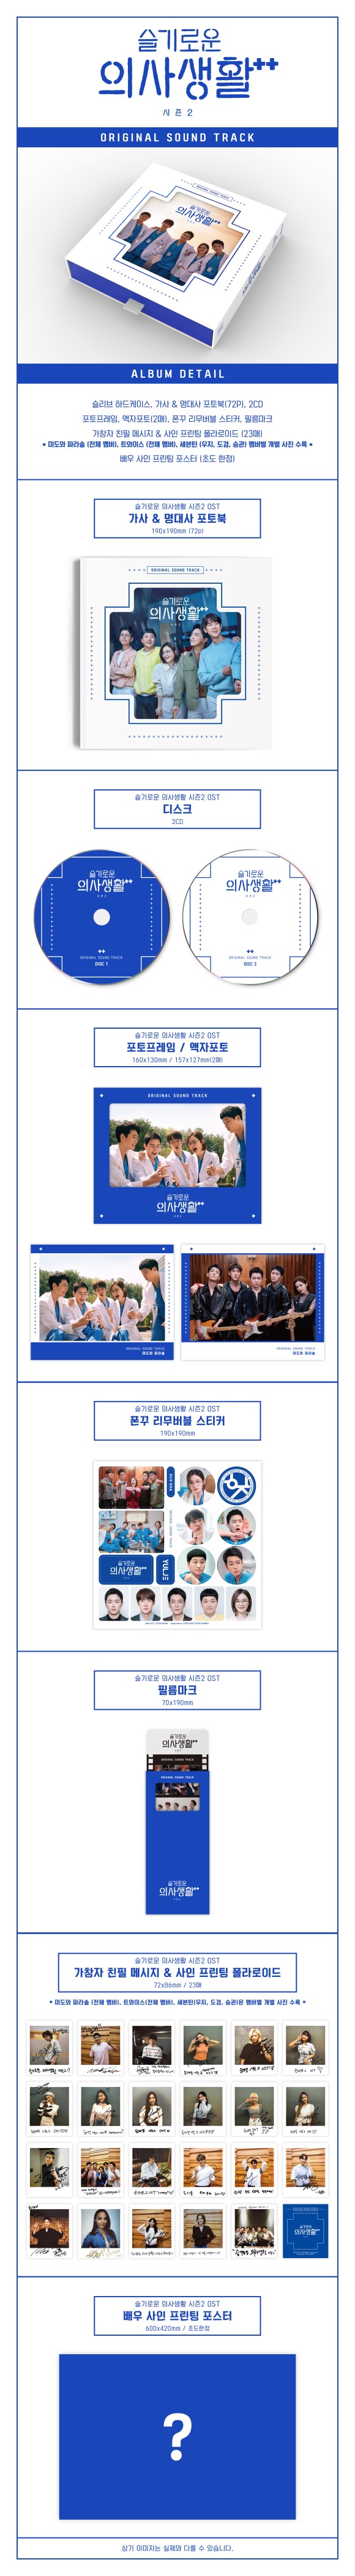 大ヒット韓国ドラマ『賢い医師生活』シーズン2 サントラ盤が2CDで登場